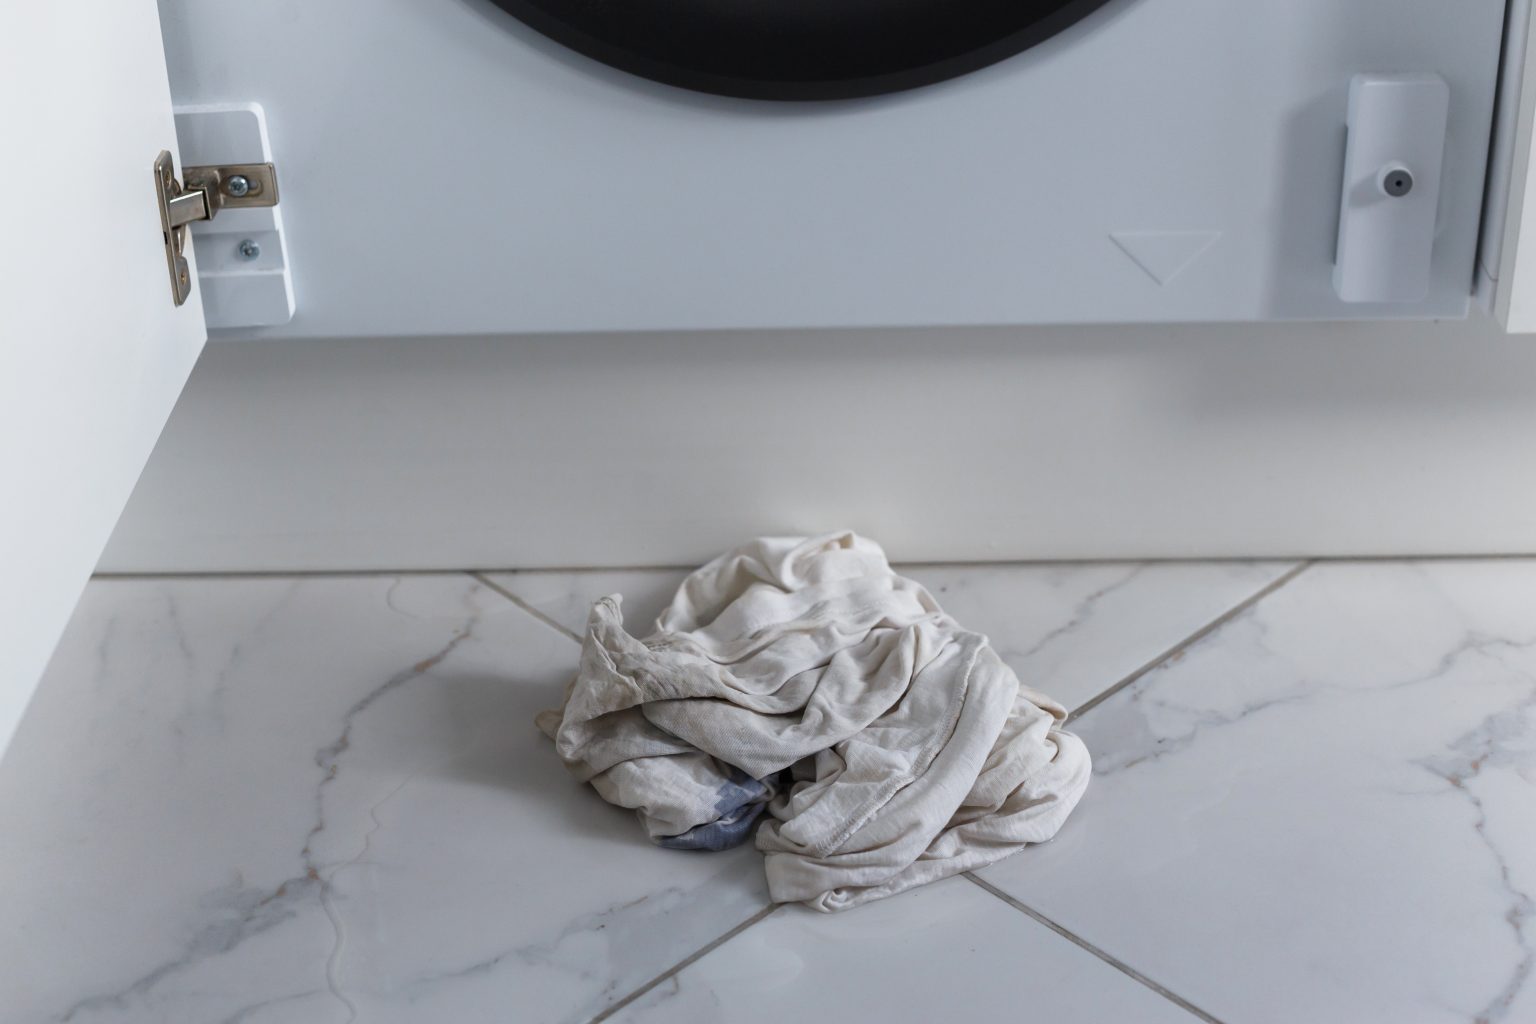 Why Does A Washing Machine Leak